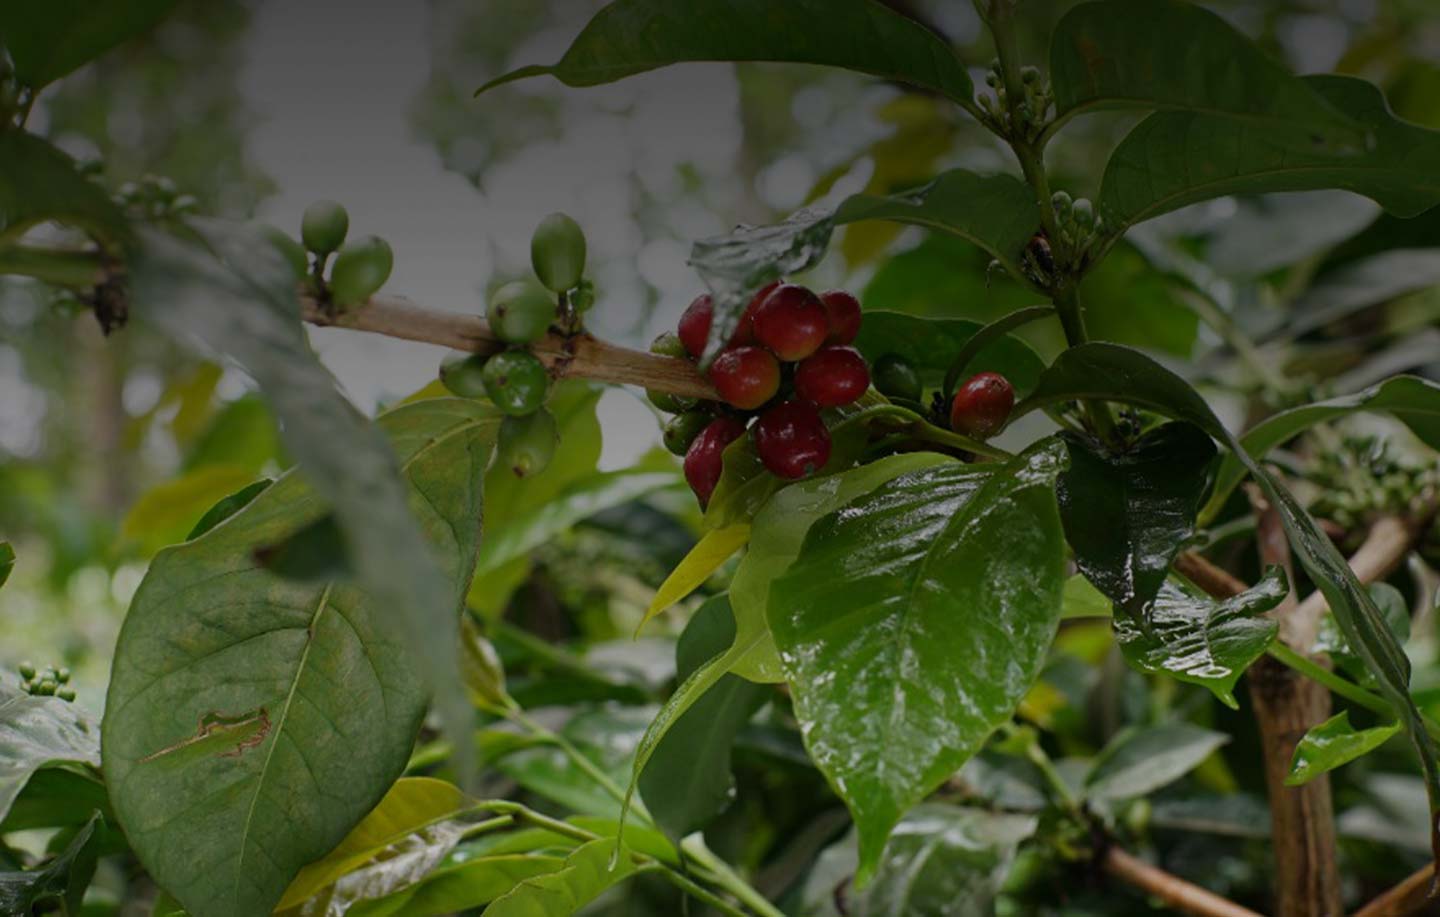 Kaffeplantager i hele verden, hvert land har sin egen smag